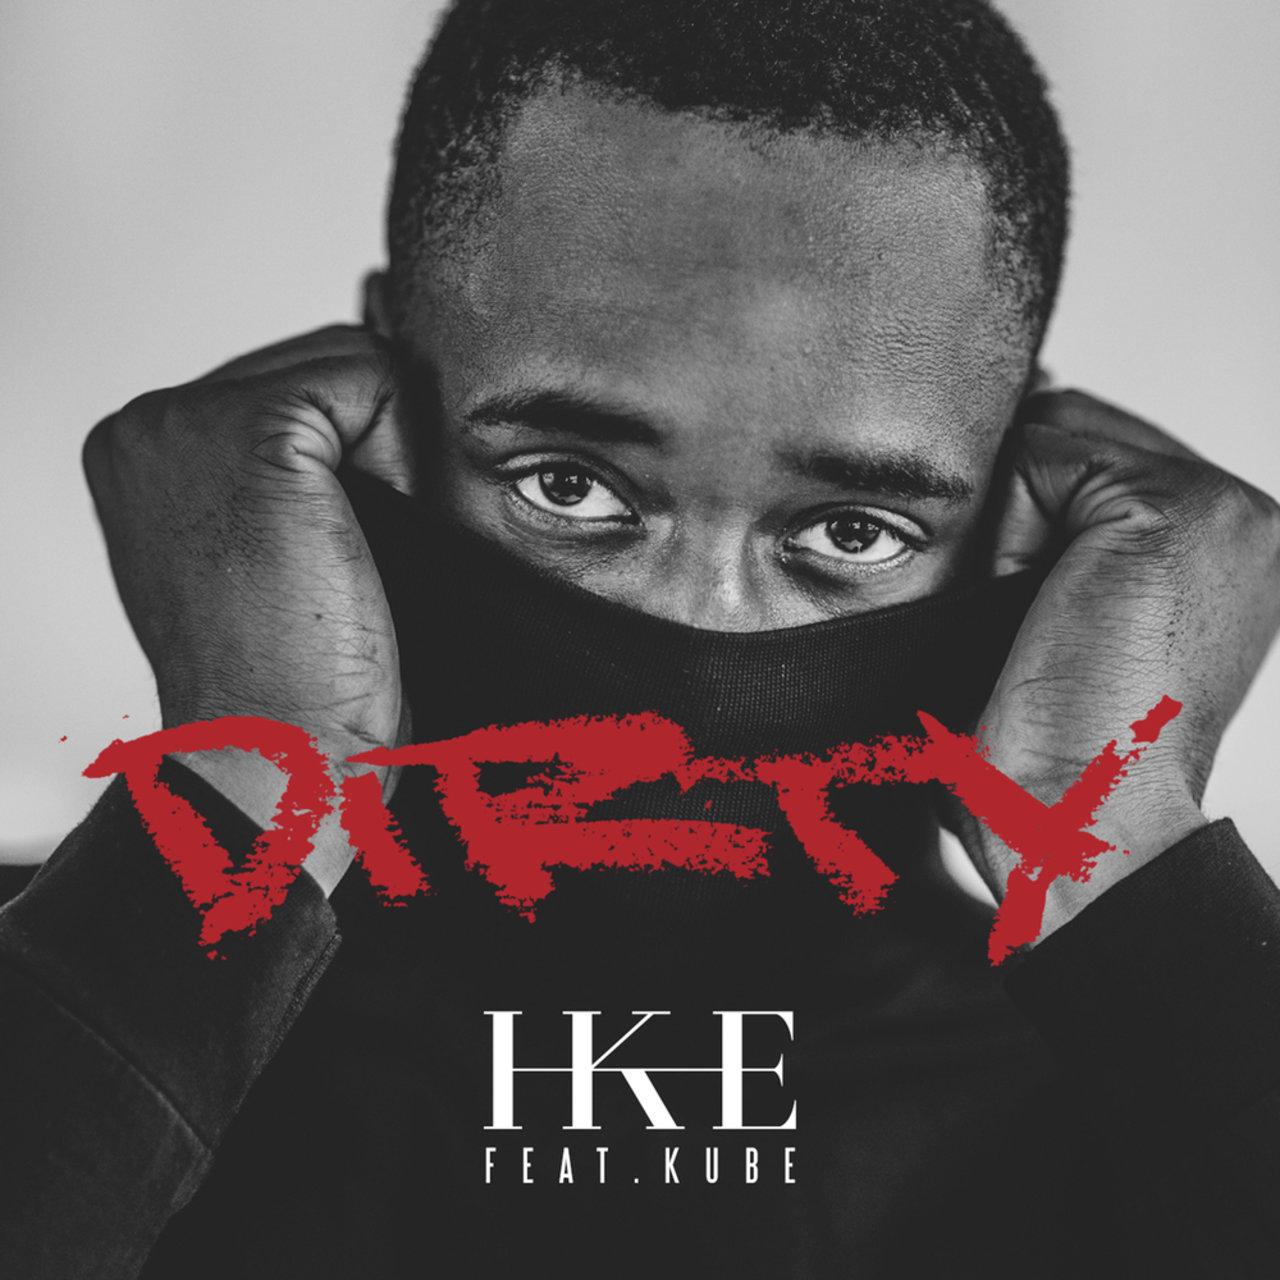 IKE – Dirty (feat. Kube)